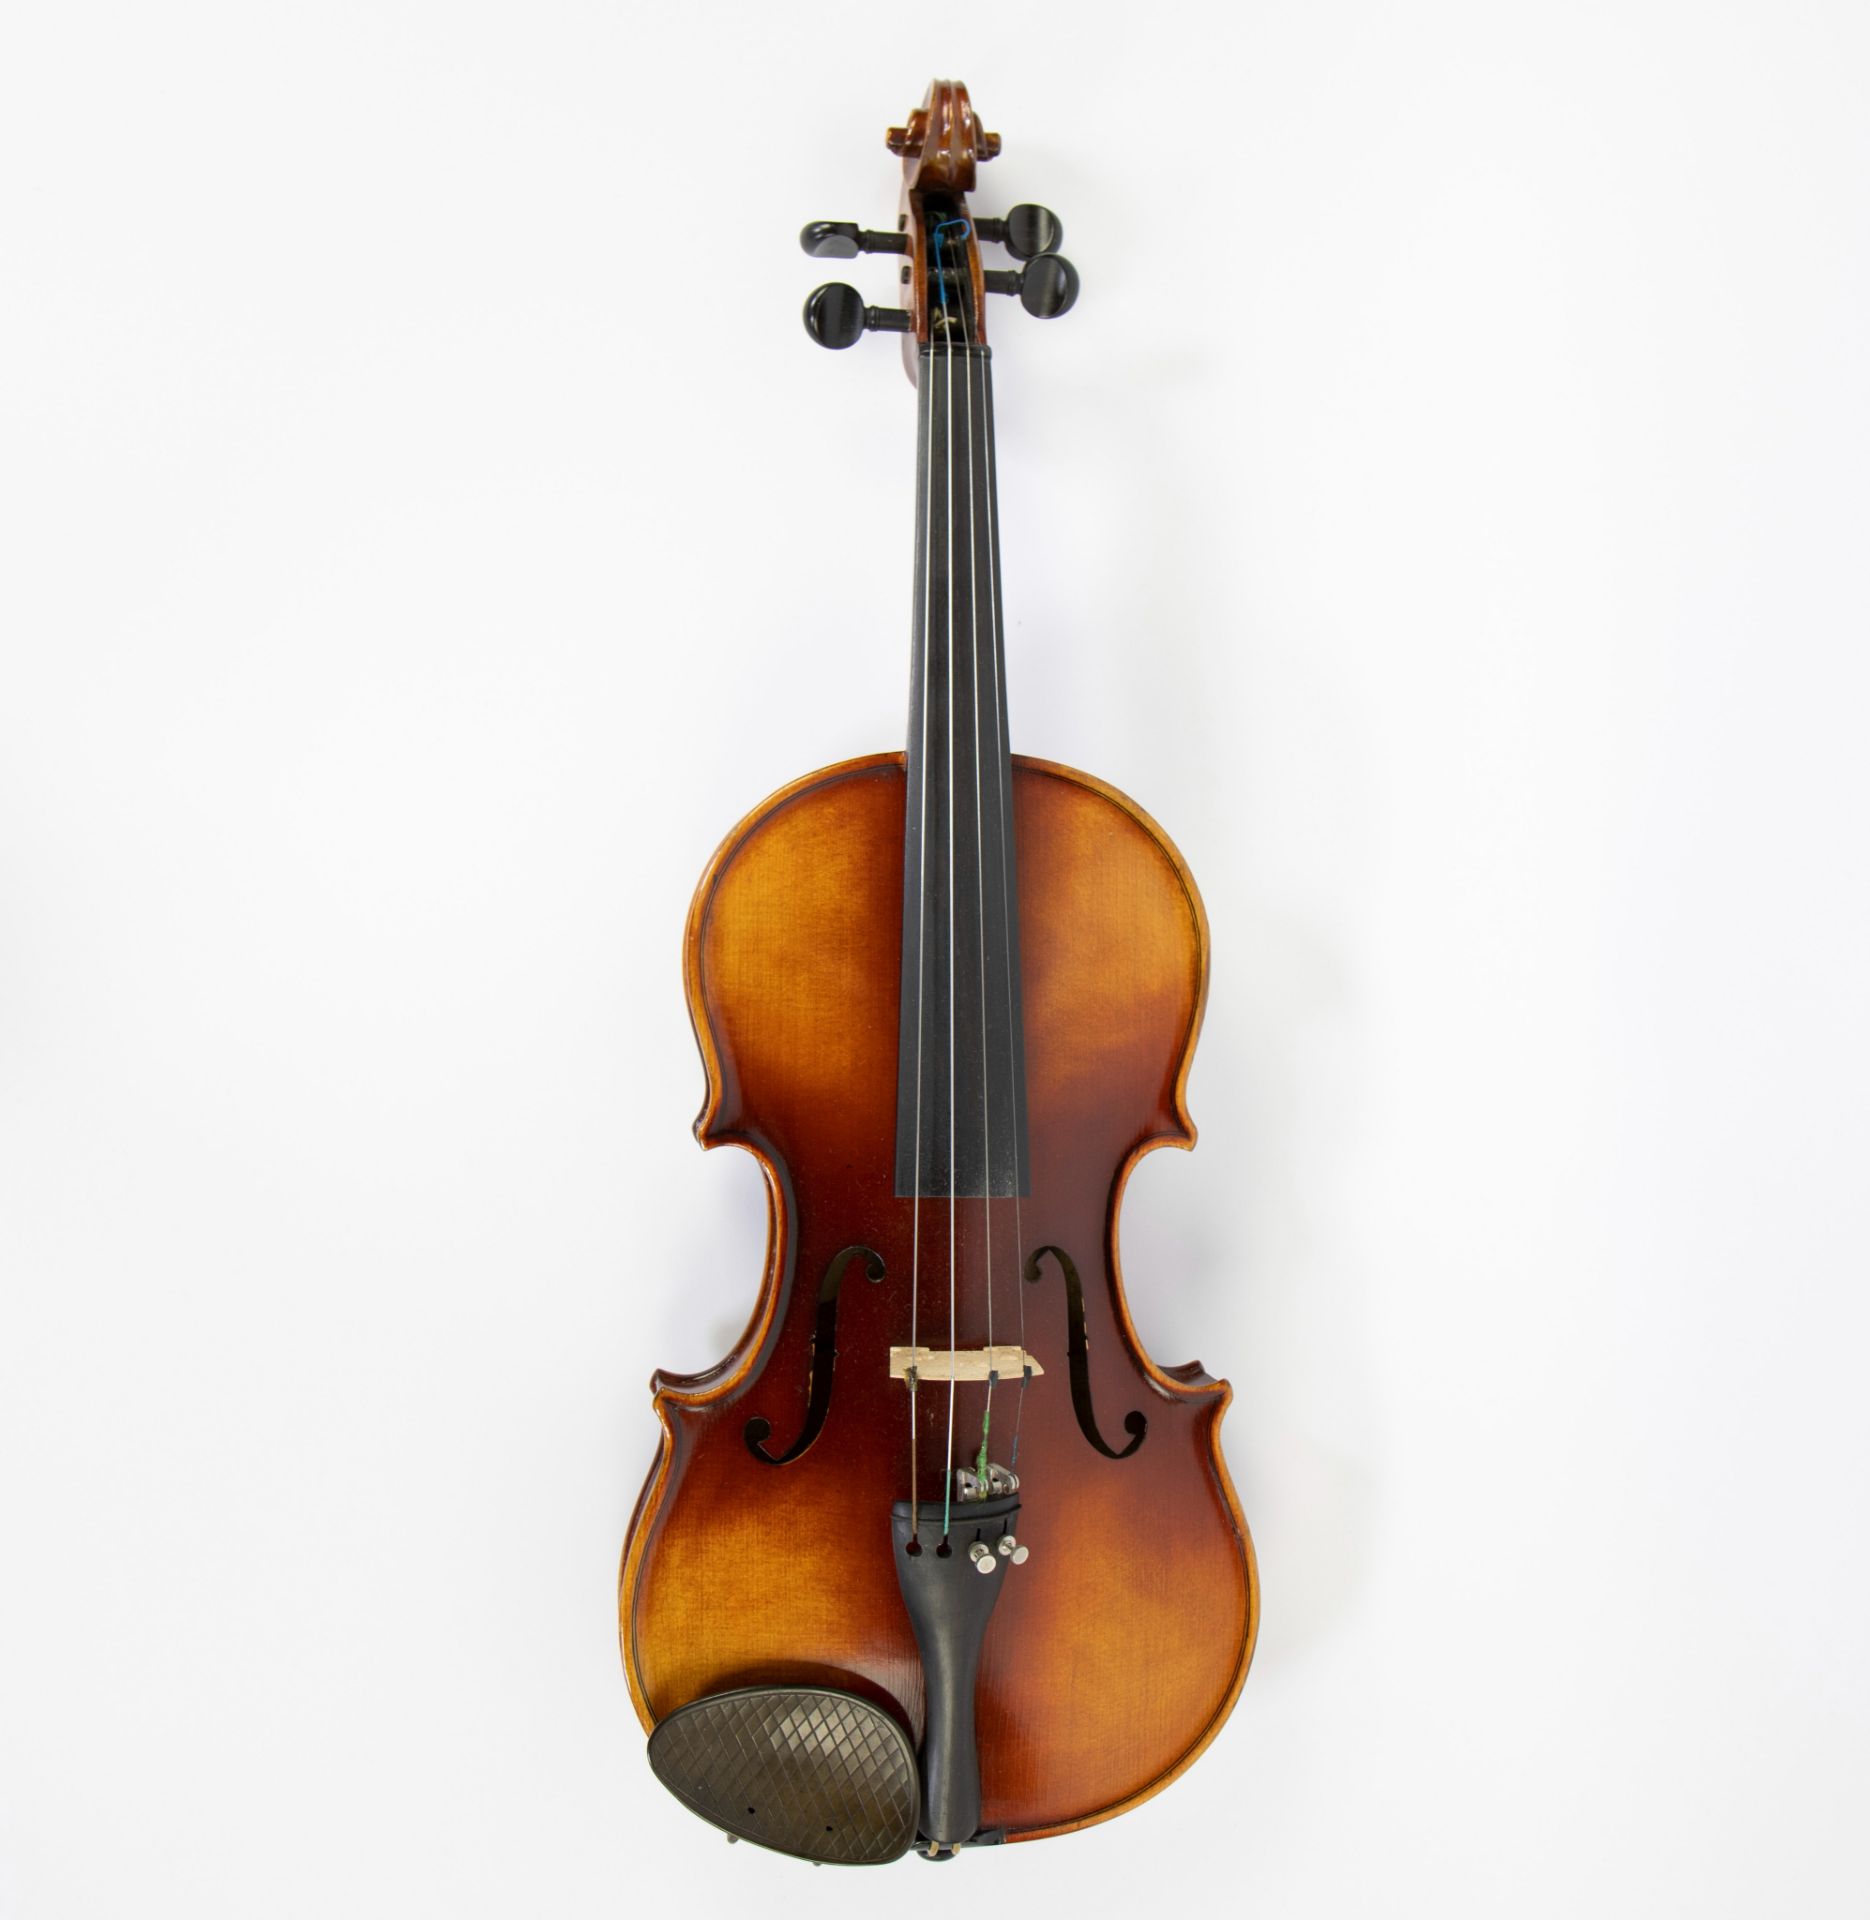 Violin no label, study violin, playable, 356mm, wooden case